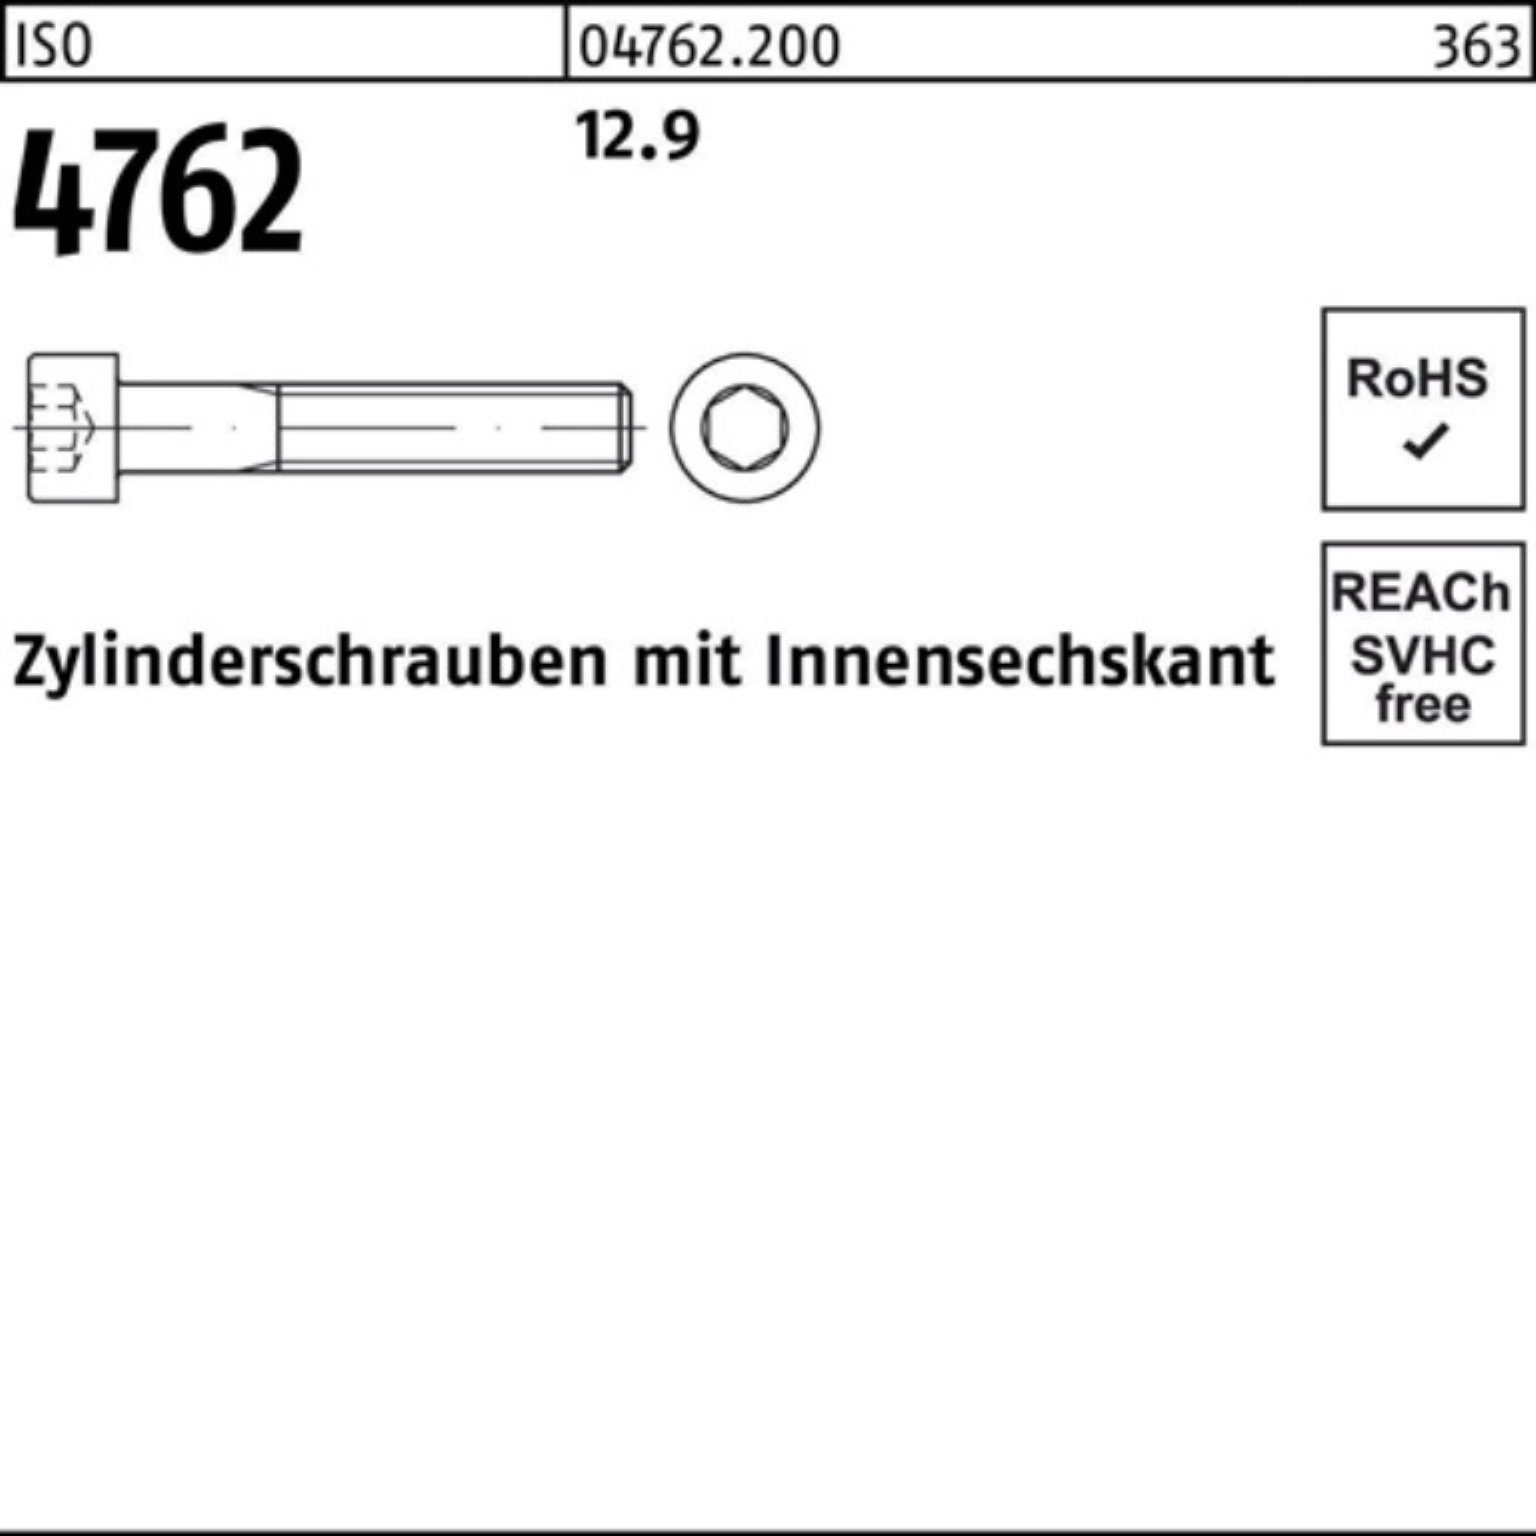 Stück 100 Innen-6kt ISO 100er Zylinderschraube 12.9 Reyher Zylinderschraube Pack 4762 200 M5x